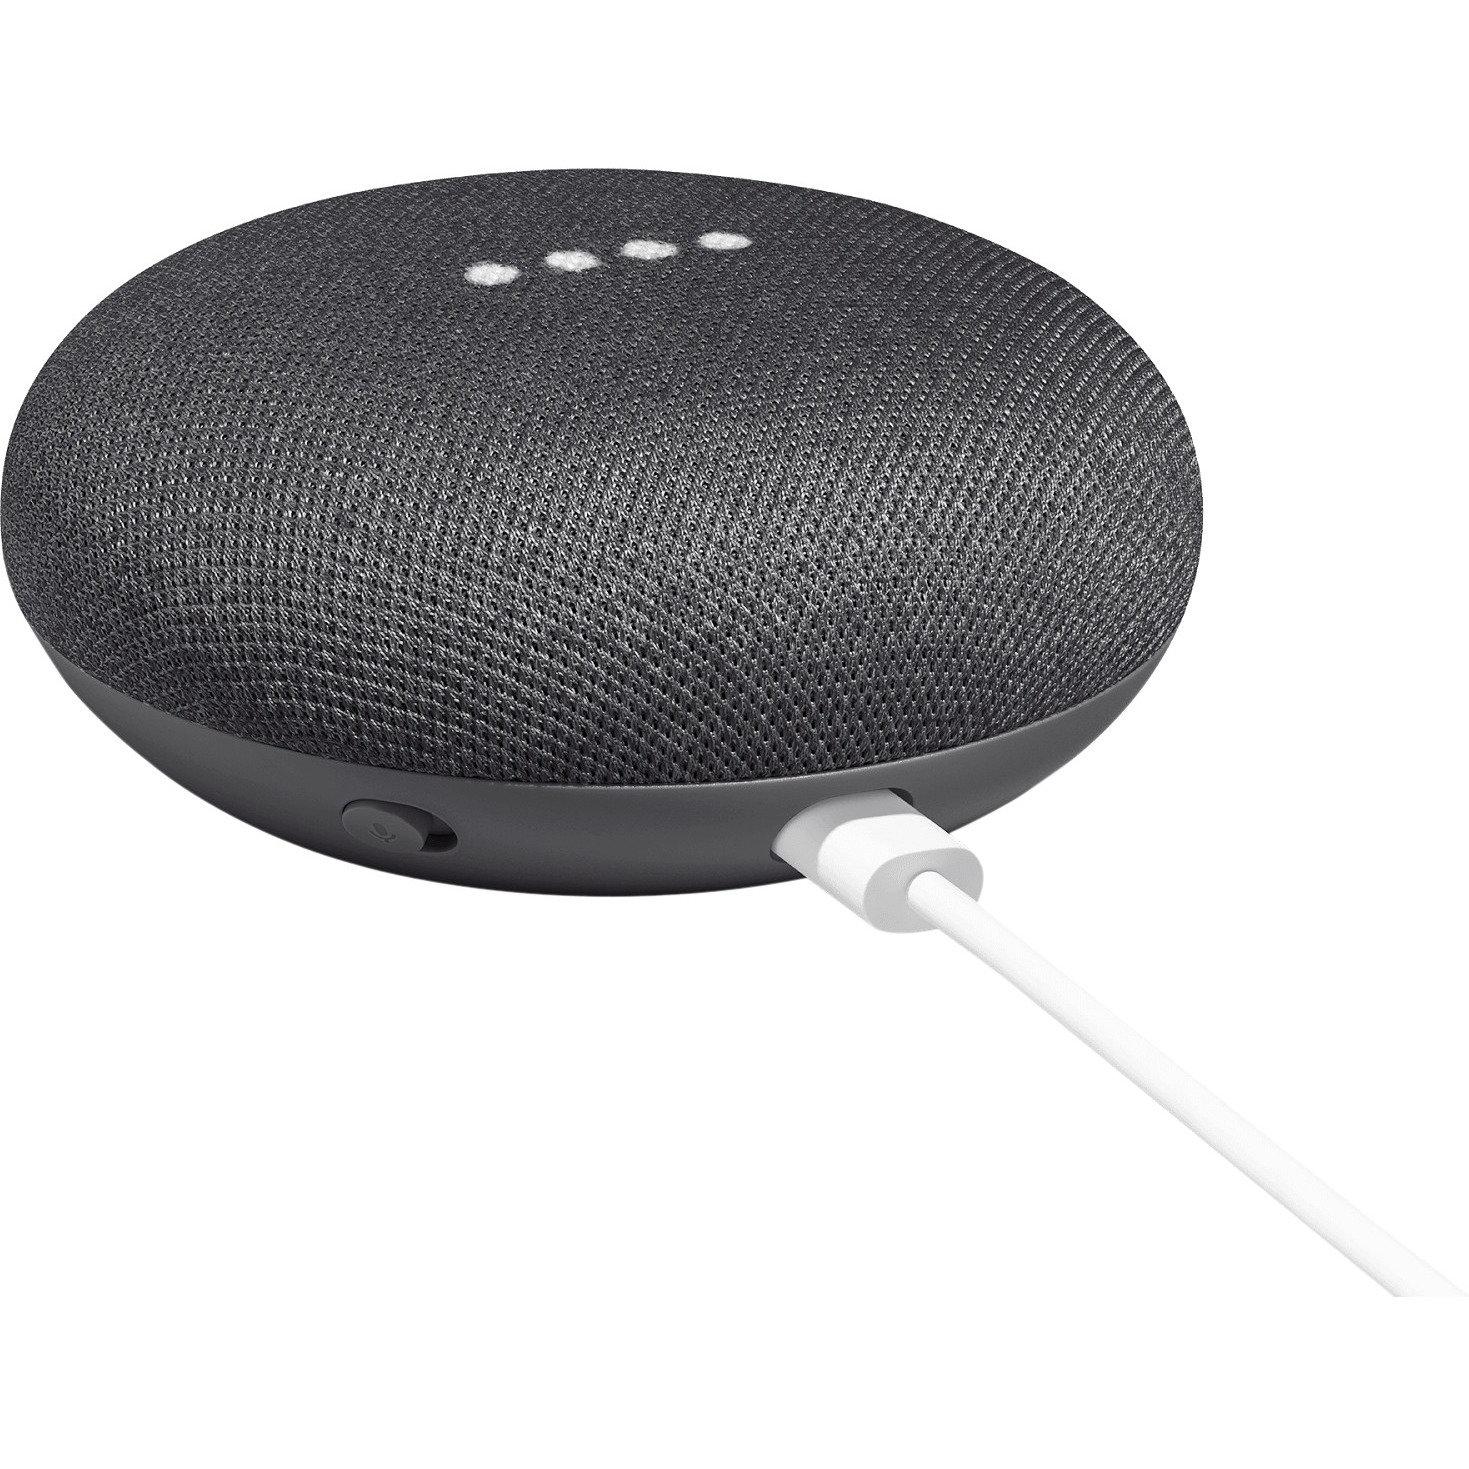 Loa Bluetooth thông minh Google Home Mini - Tích hợp trợ lý ảo.